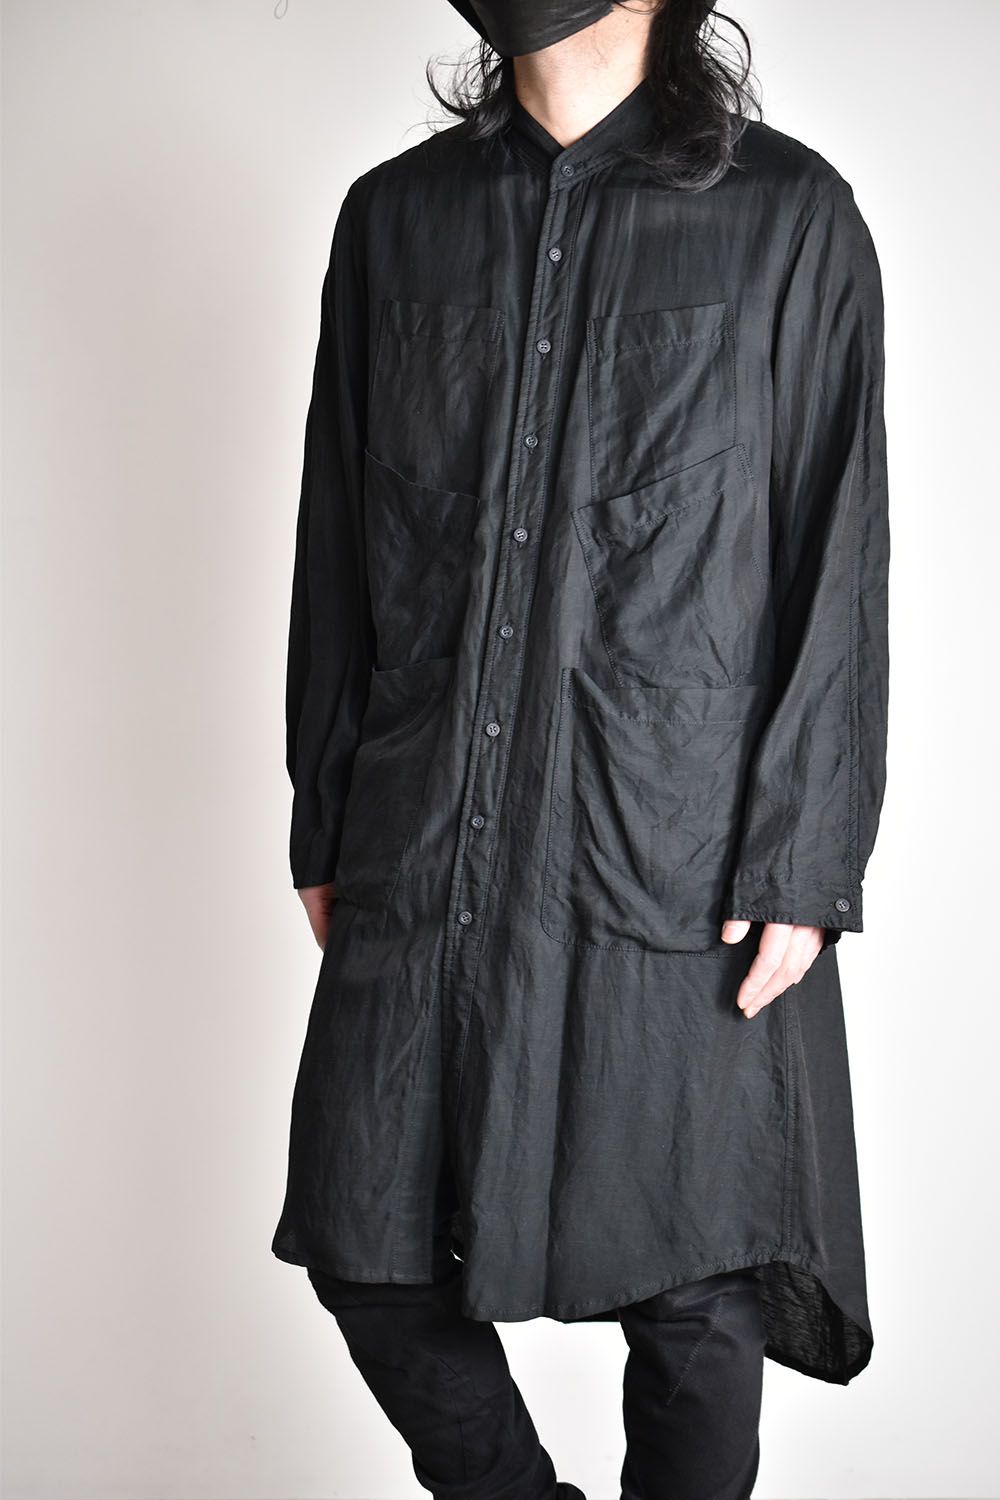 nude:masahiko maruyama - Long Shirt